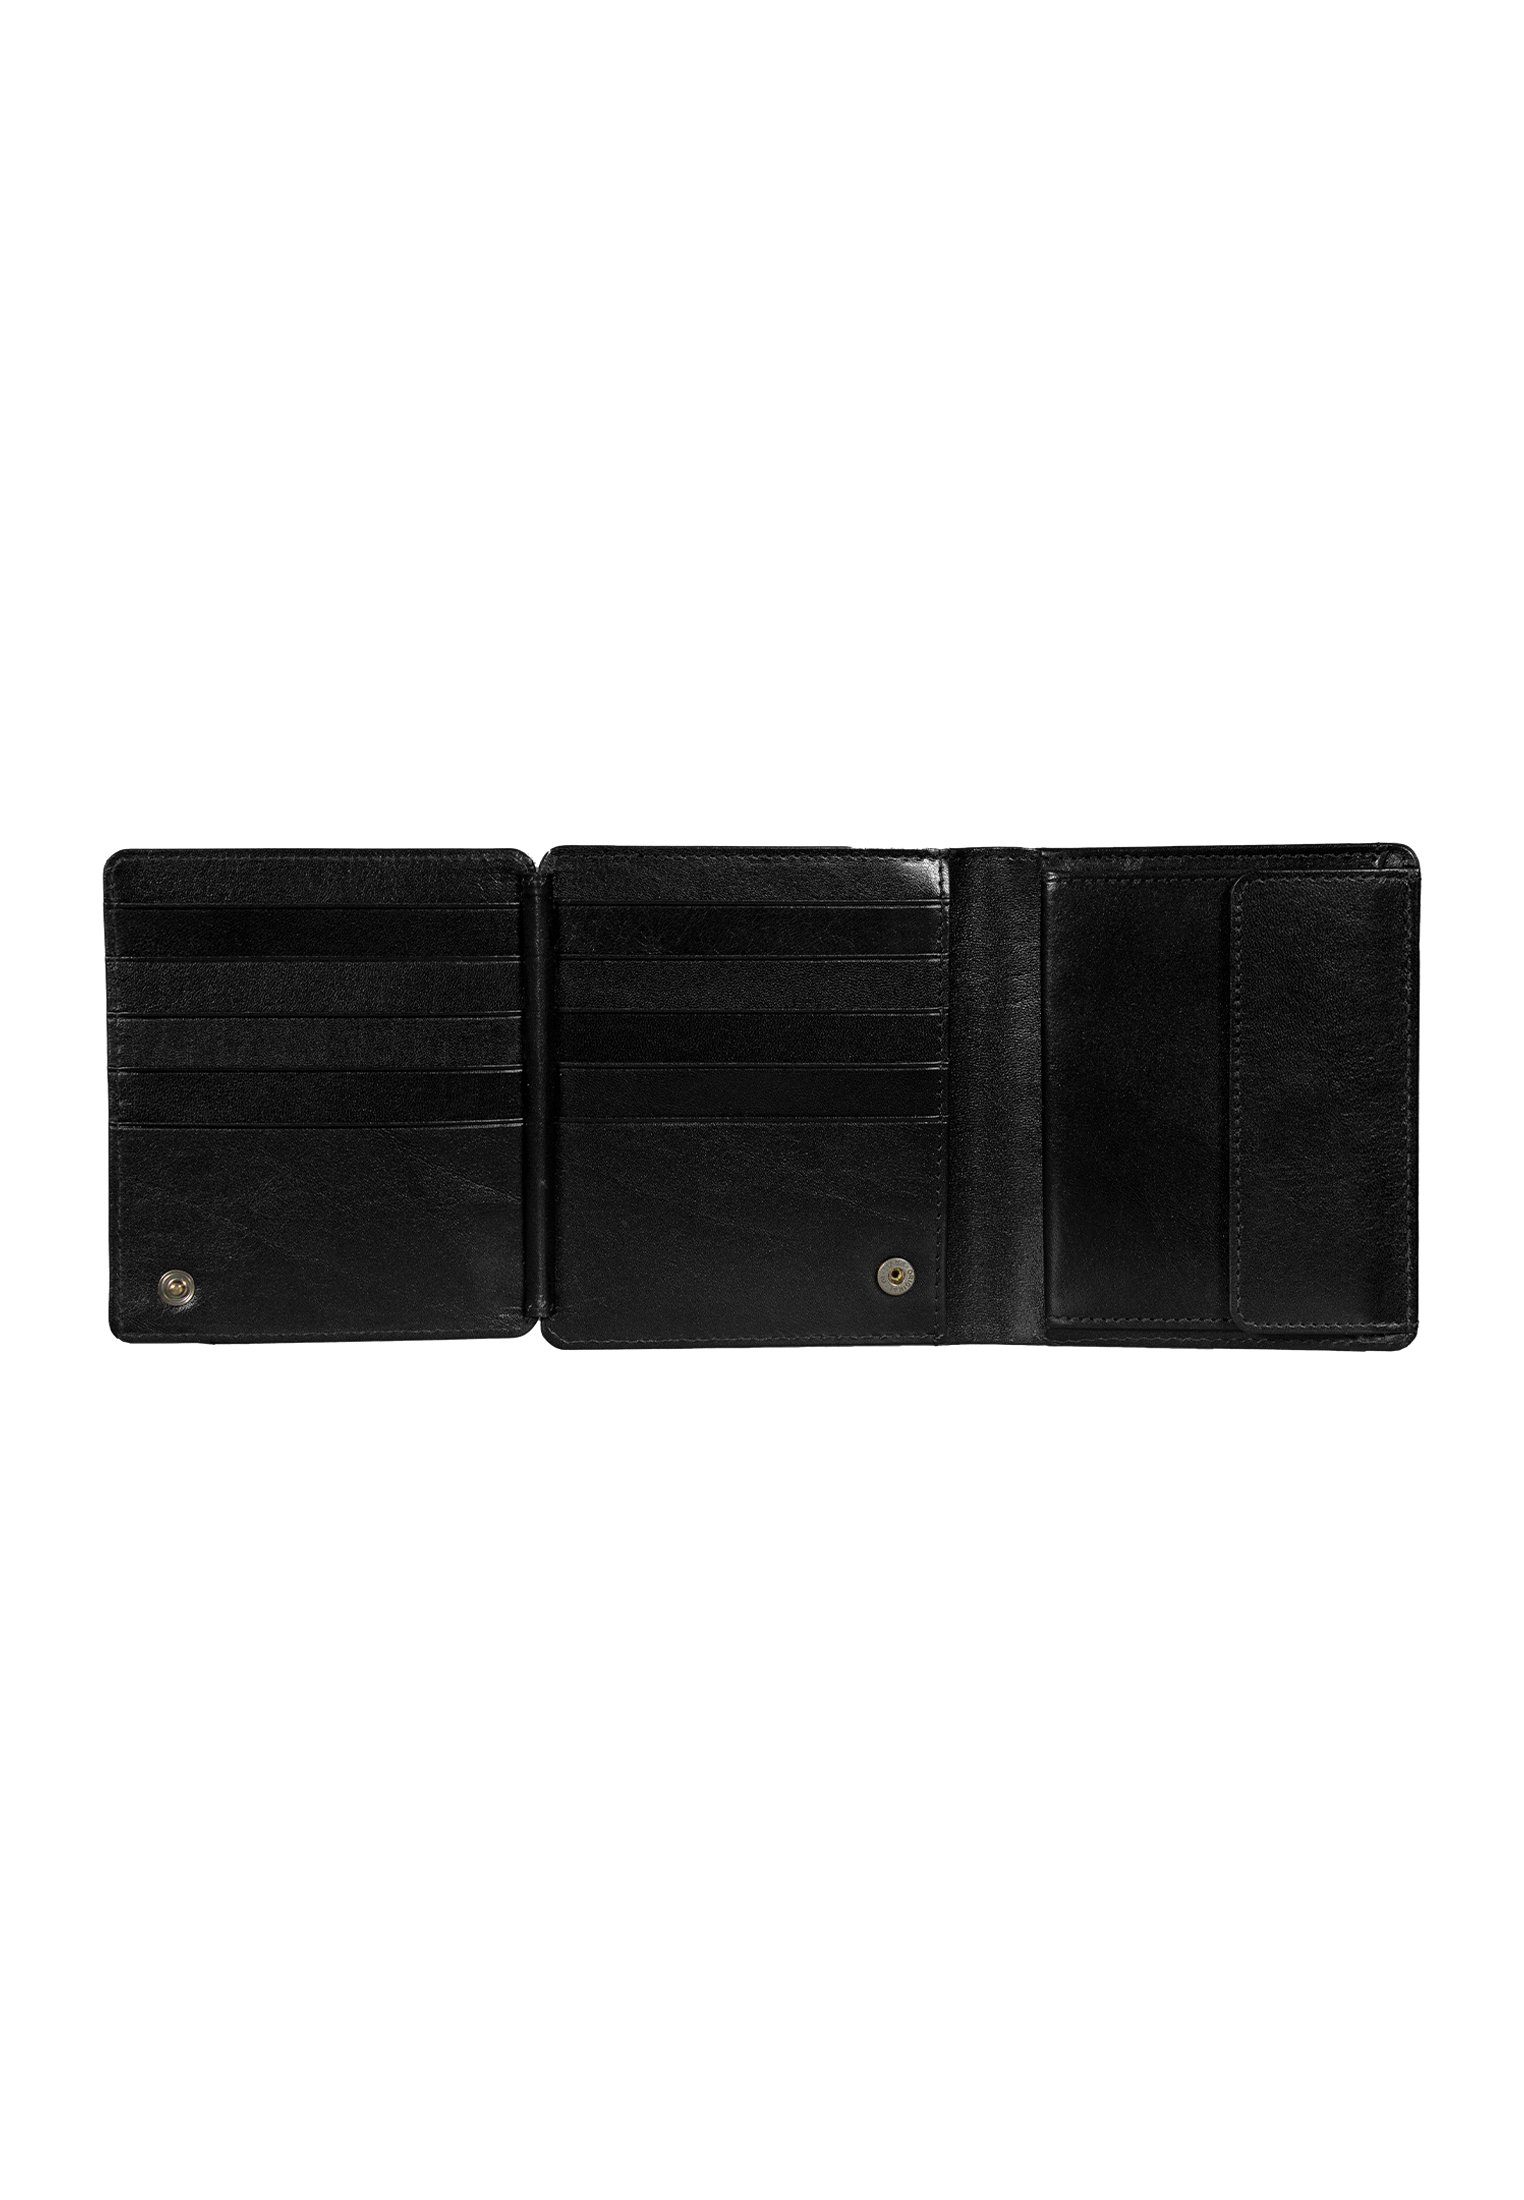 Braun RFID für mit Geldbörse Stauraum H COUNTRY schwarz 15CS, viel Geldbörse Büffel Kartensammler